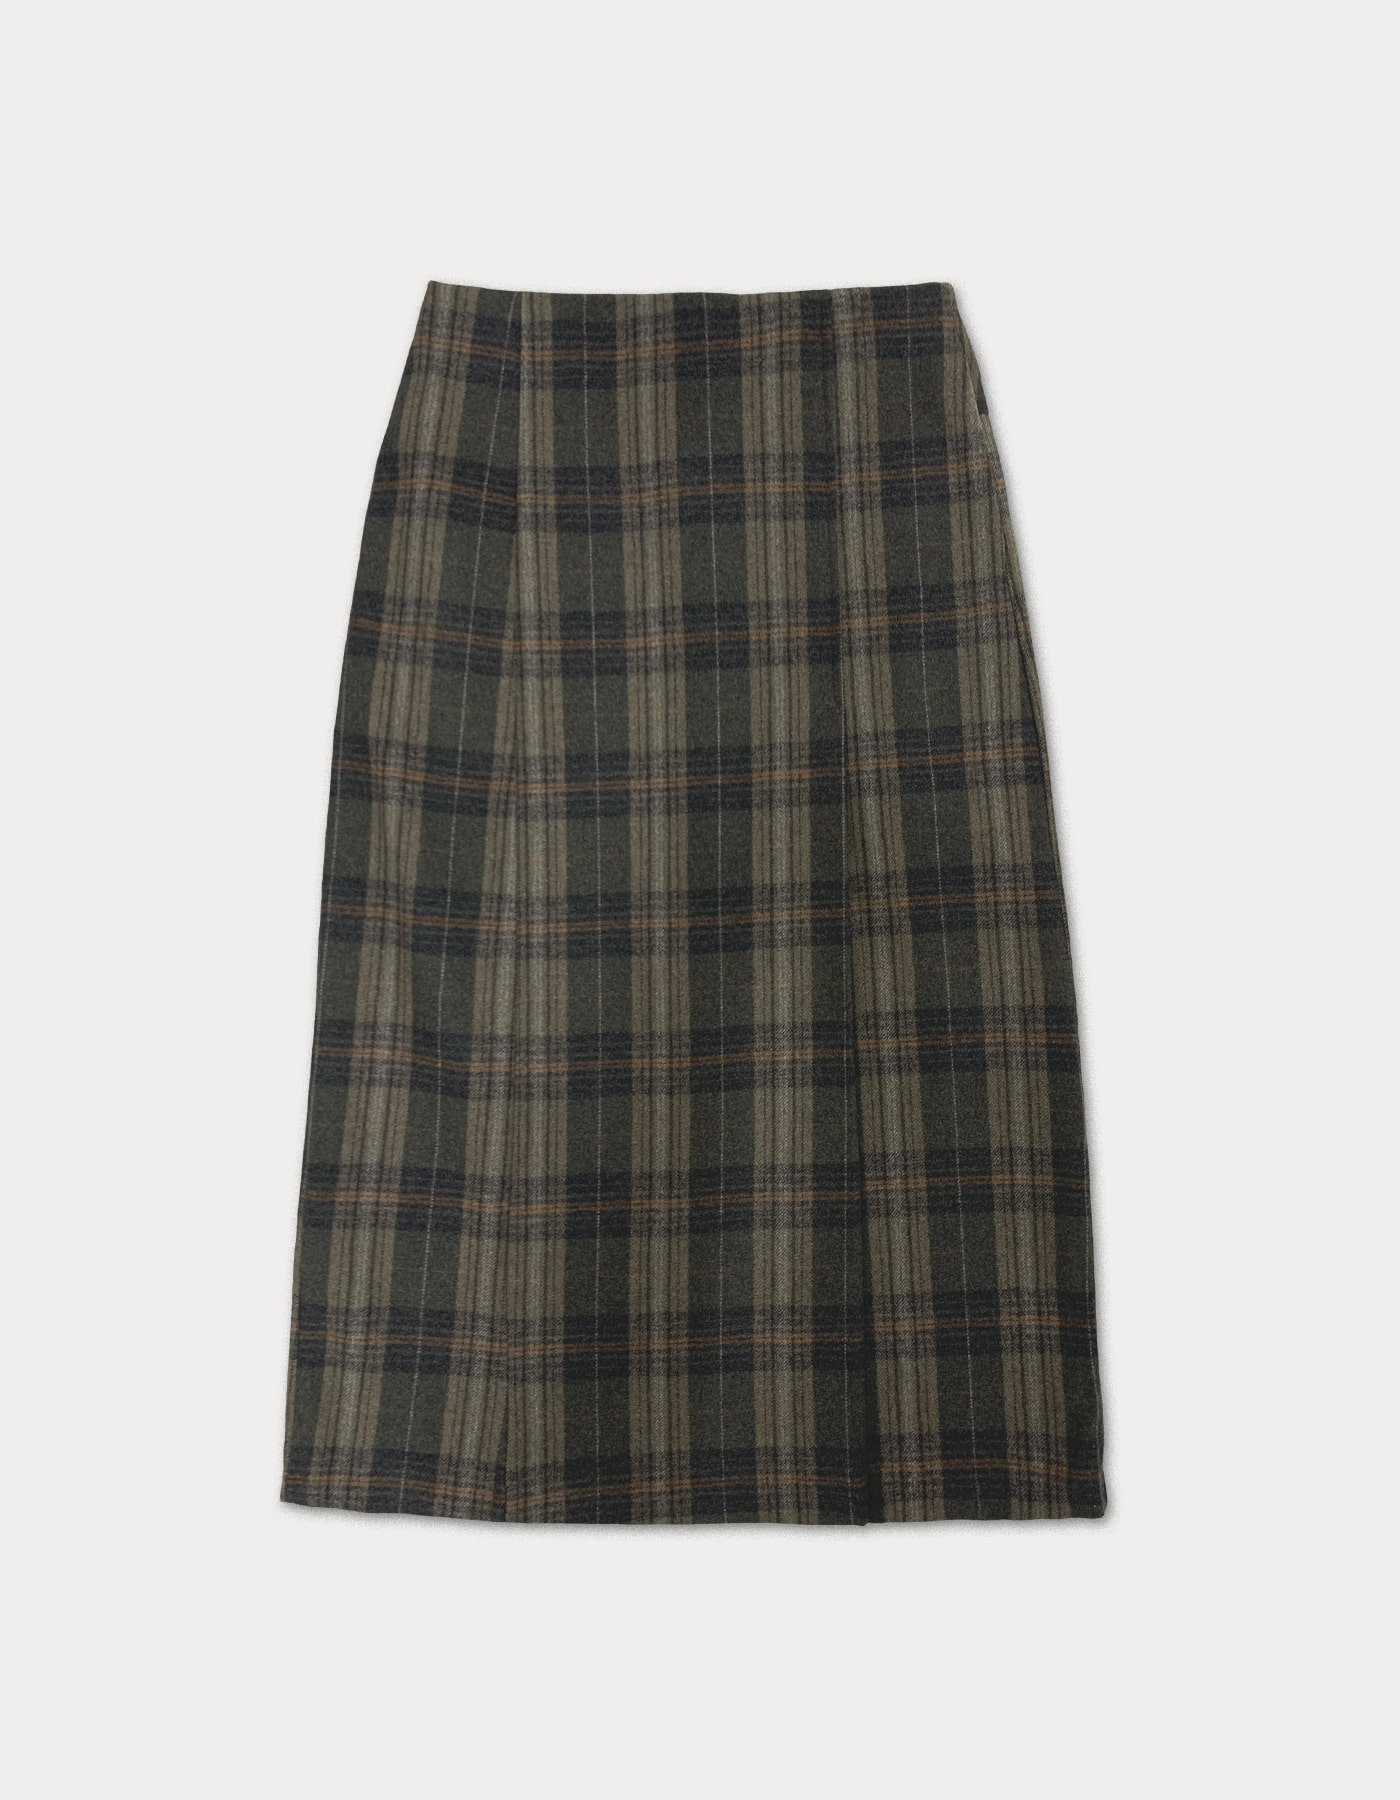 Vintage check wool skirt - dark brown